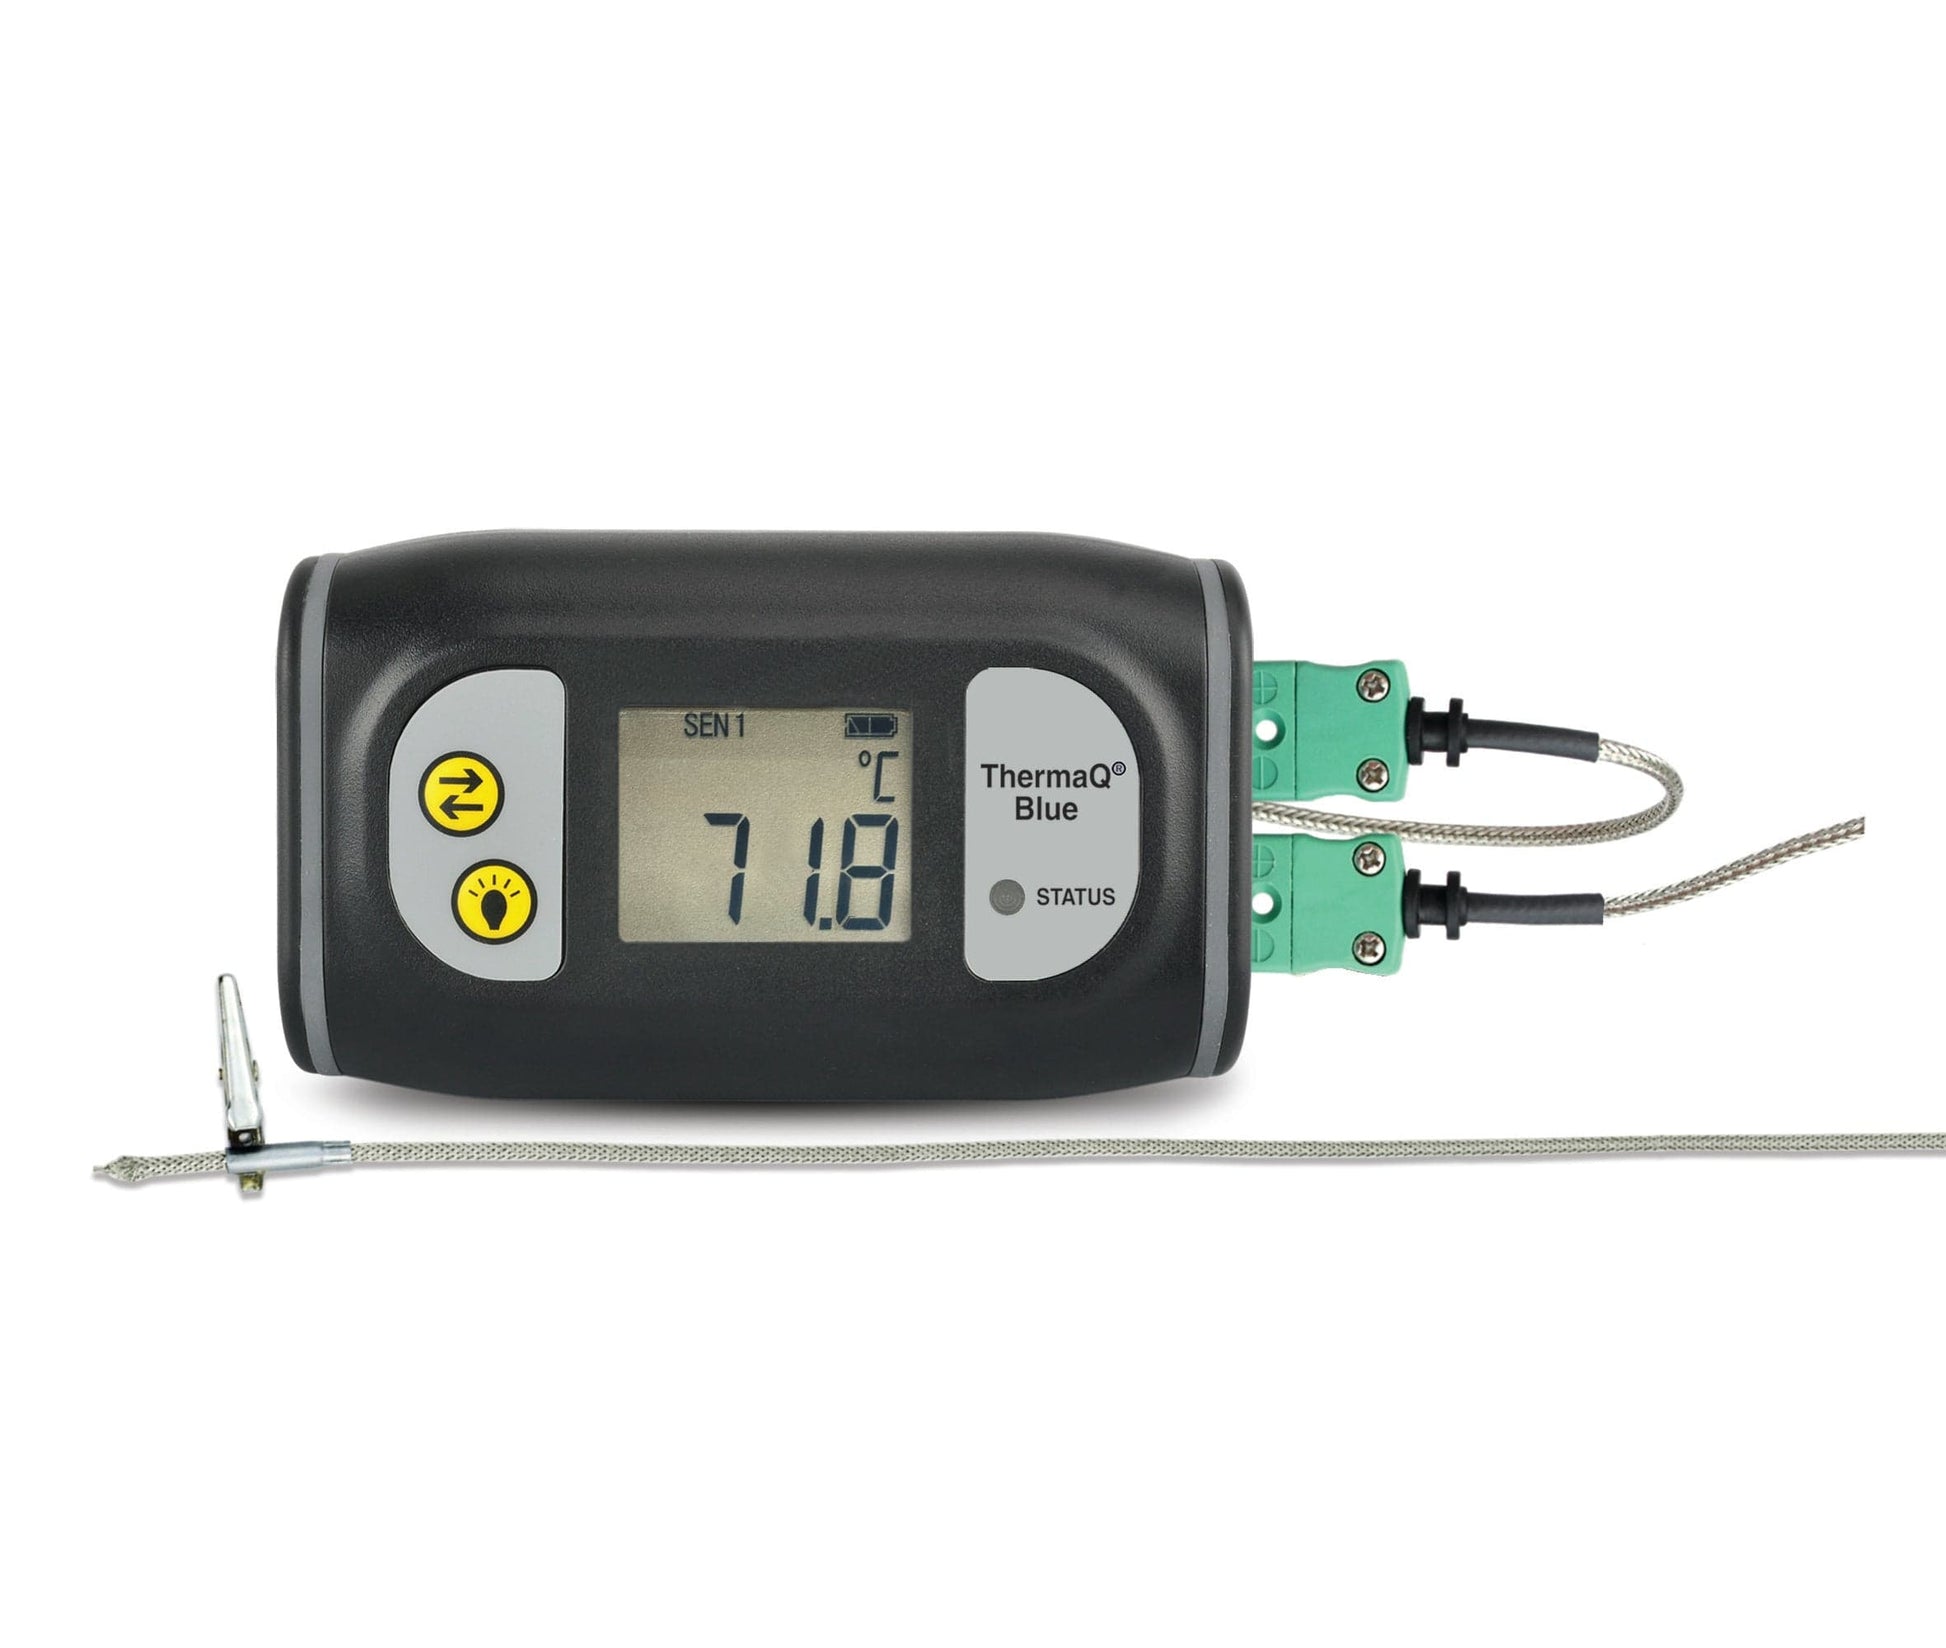 un thermomètre numérique Thermomètre ThermaQ Blue avec un fil attaché par Thermometre.fr.